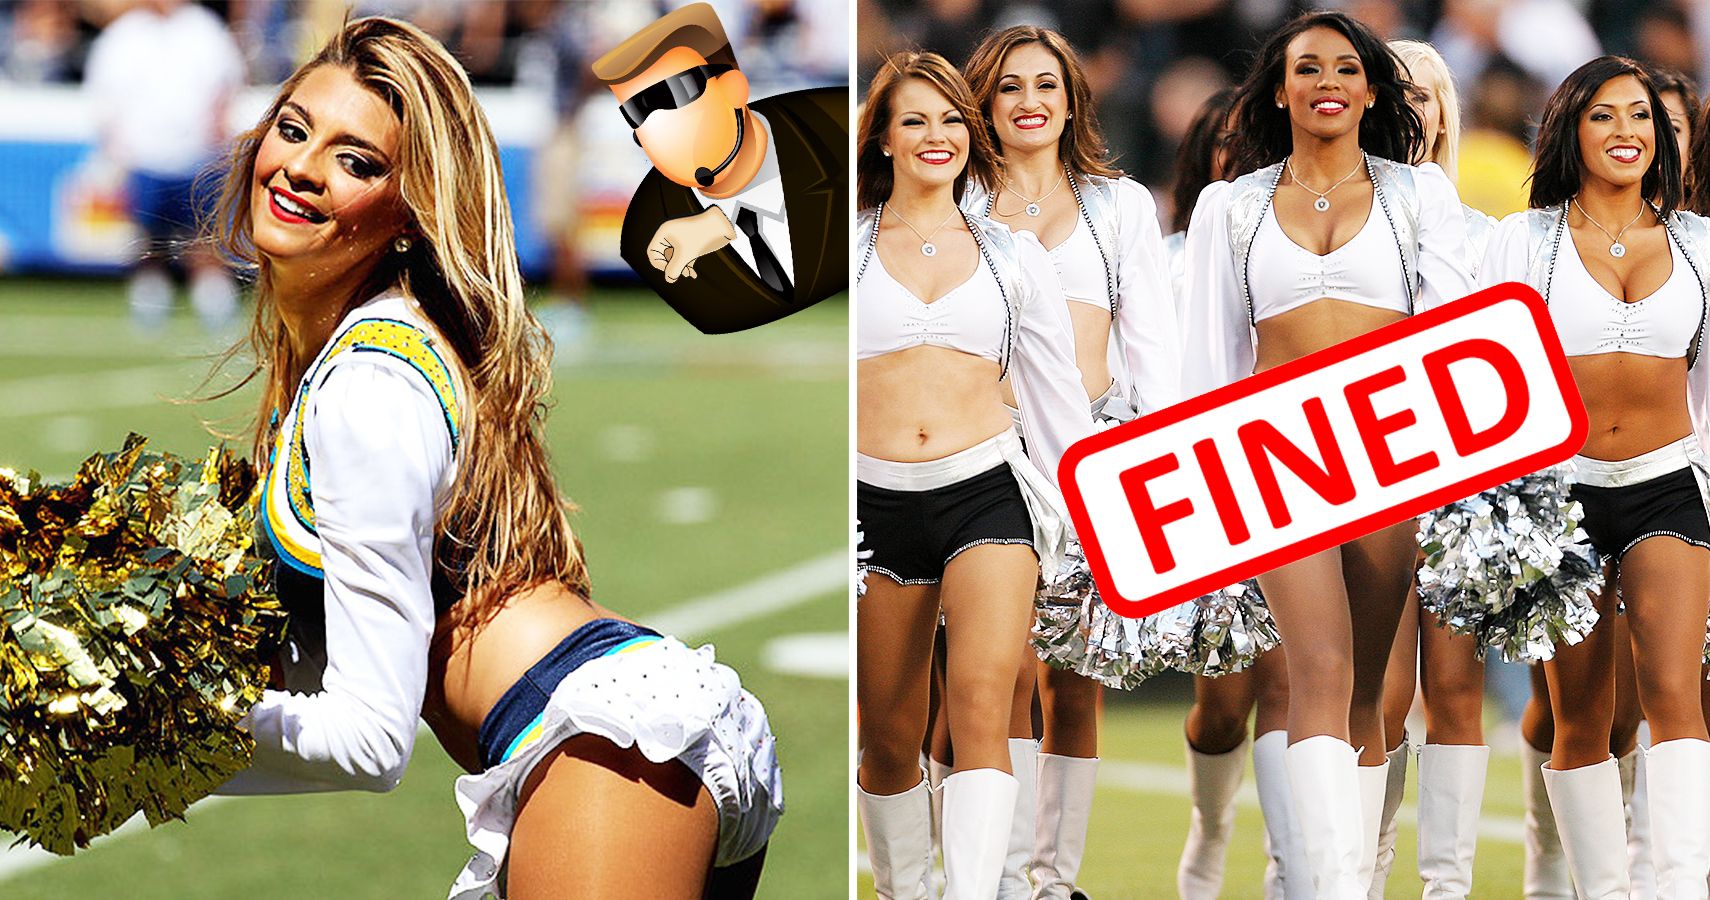 15 Disturbing NFL Cheerleader Stories We Hope Aren't True.